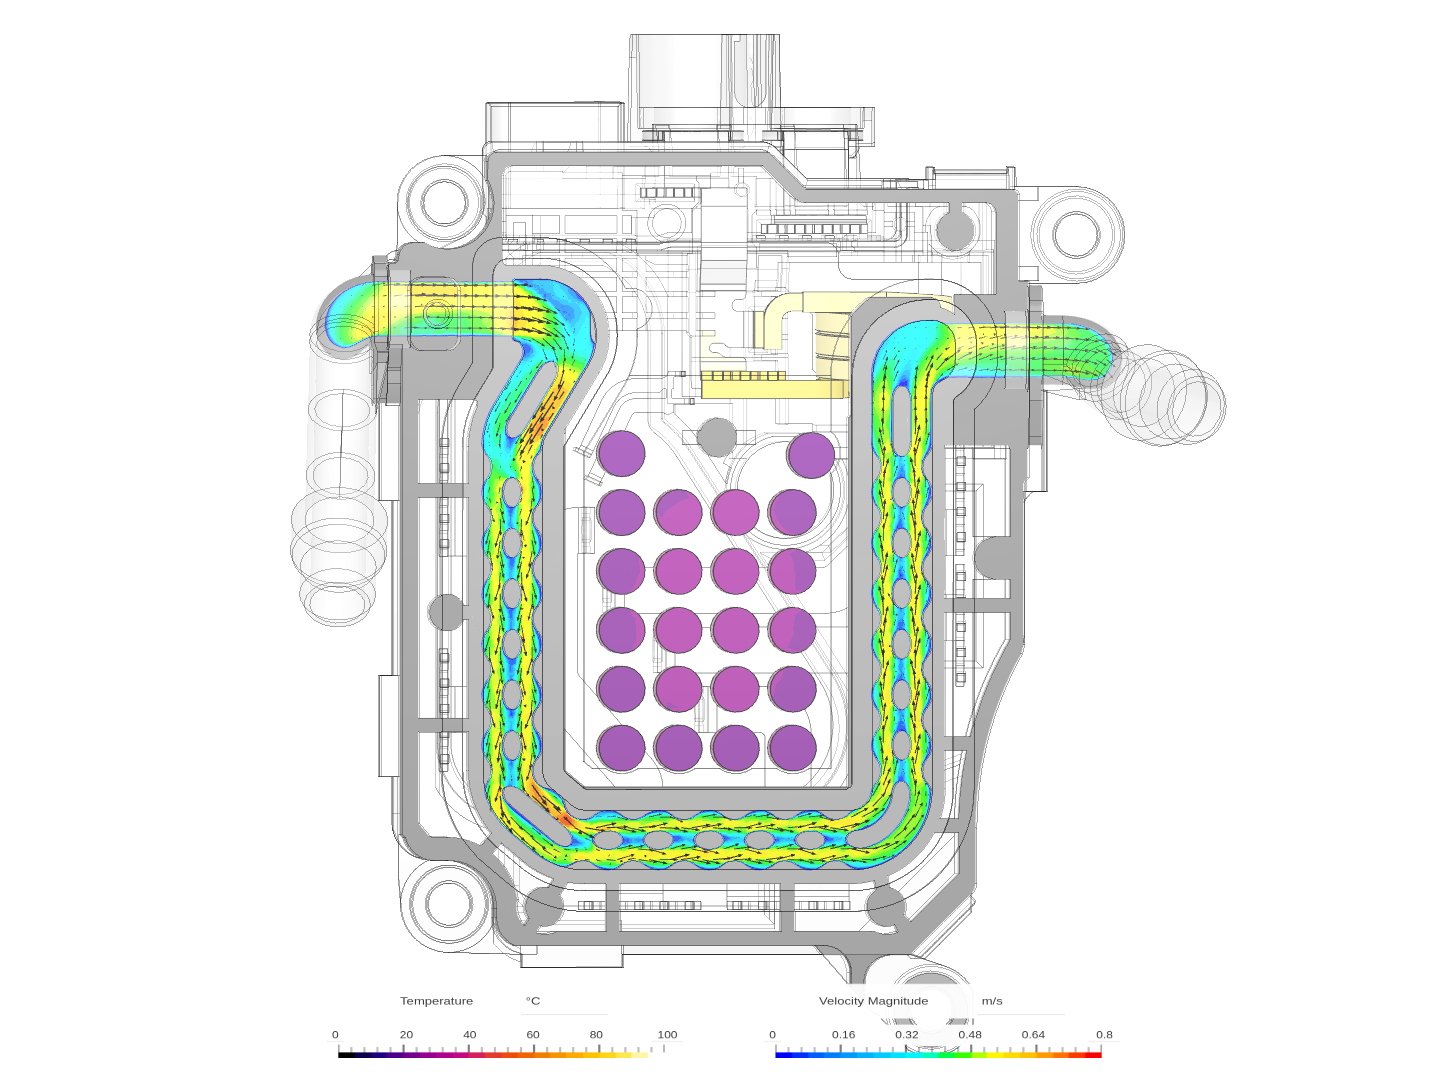 Inverter cooling-CHT-Demo image